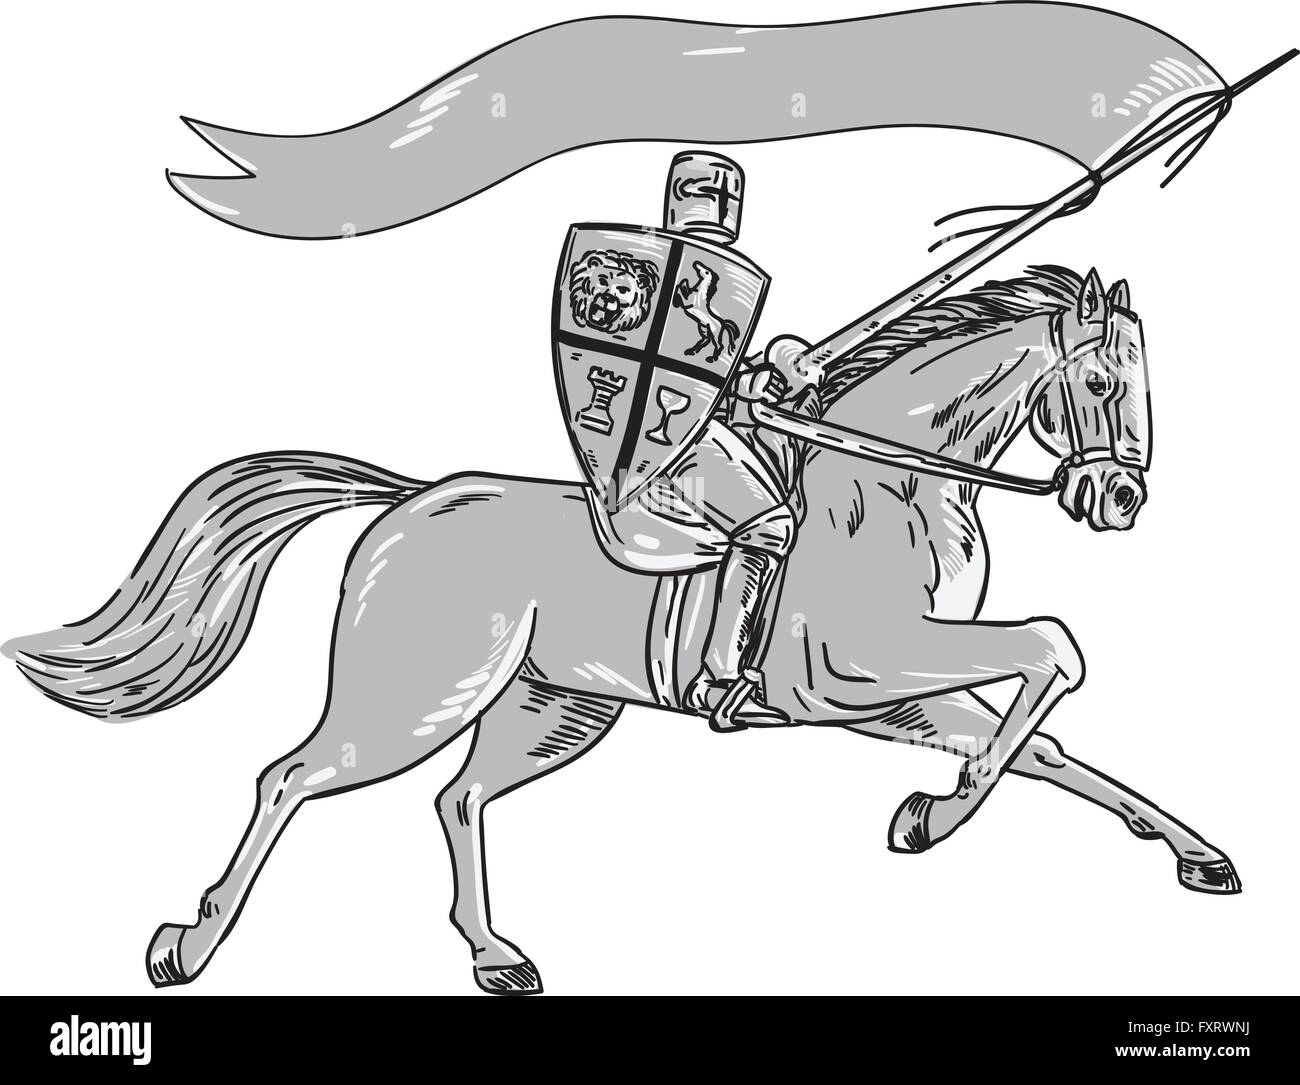 Illustration de l'chevalier en armure complète holding lance, bouclier et d'un drapeau riding horse vu de côté sur un fond blanc fait en style rétro. Illustration de Vecteur